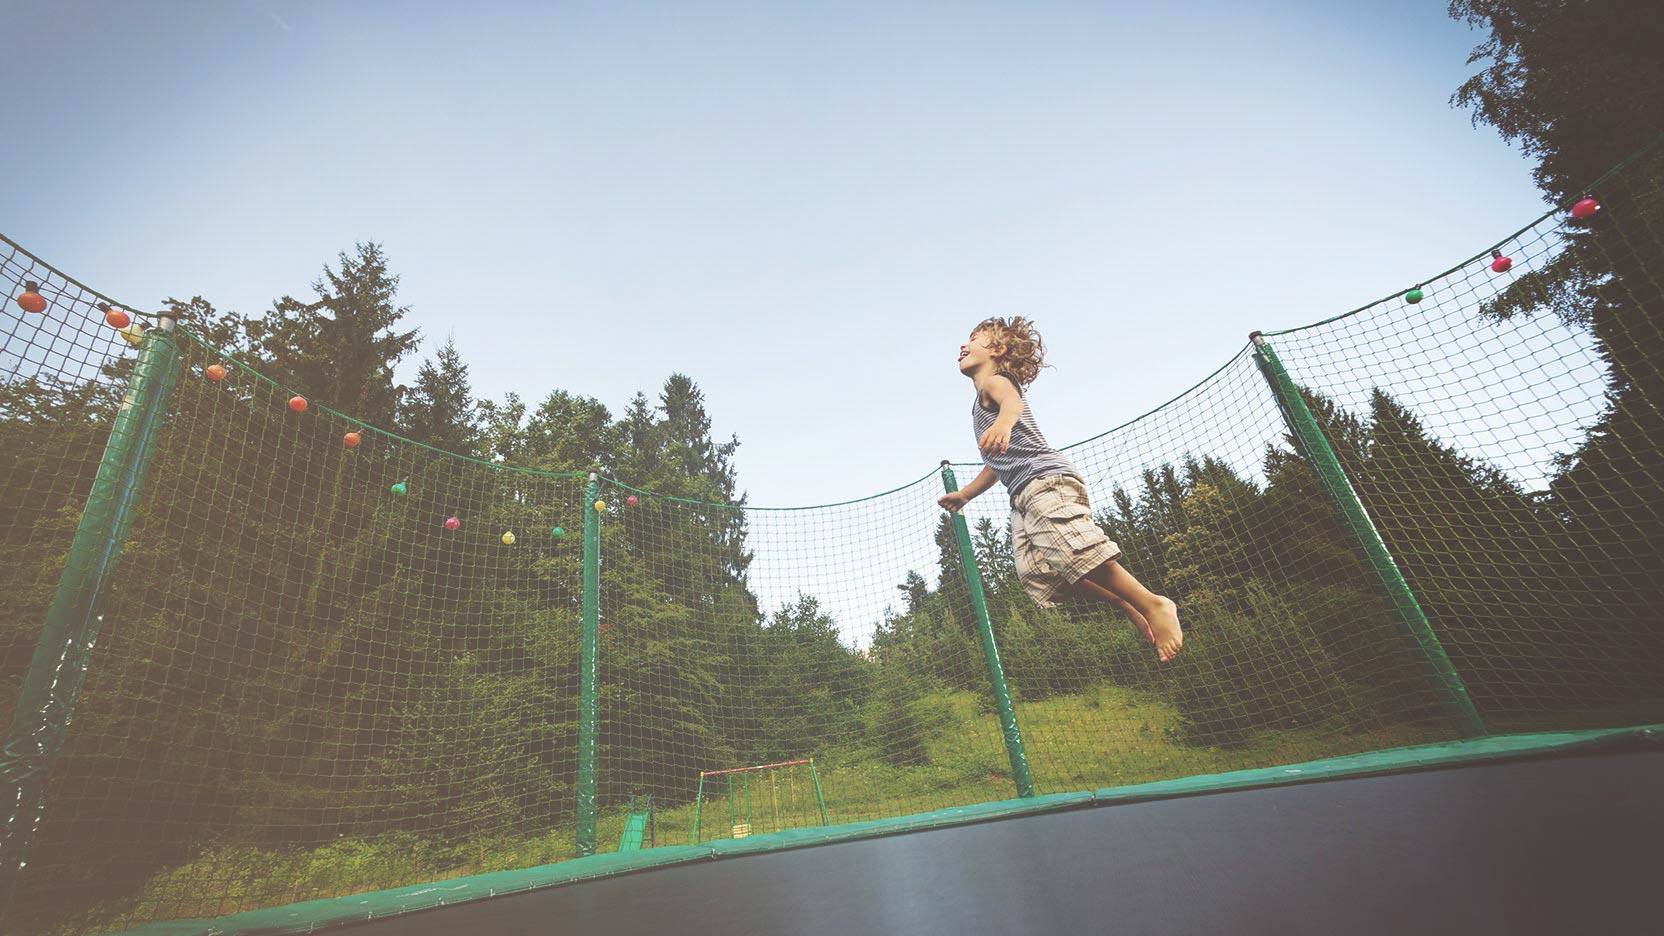 Sådan sikrer du dig at børnene hopper sikkert på trampolinen